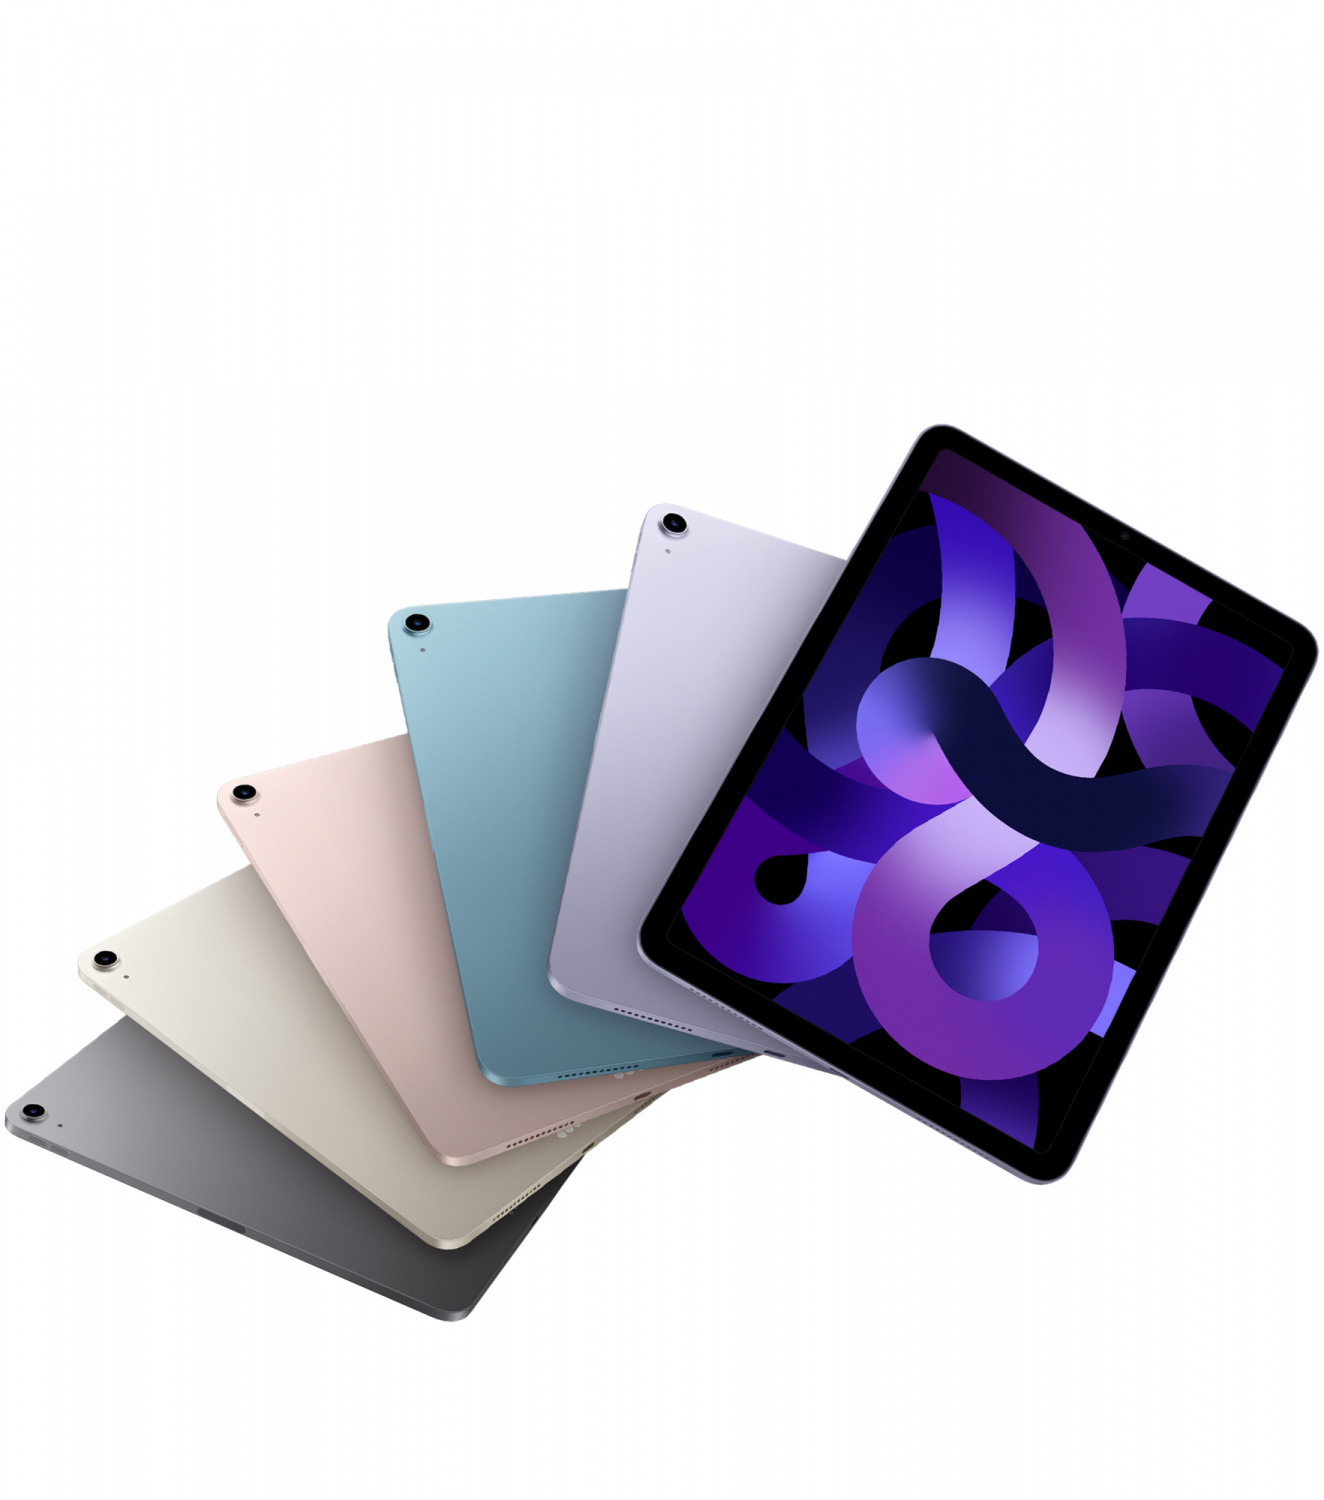 Купить планшет apple ipad air 5 поколение m1 2022  wi-fi 64 гб, purple Apple iPad Air в официальном магазине Apple, Samsung, Xiaomi. iPixel.ru Купить, заказ, кредит, рассрочка, отзывы,  характеристики, цена,  фотографии, в подарок.